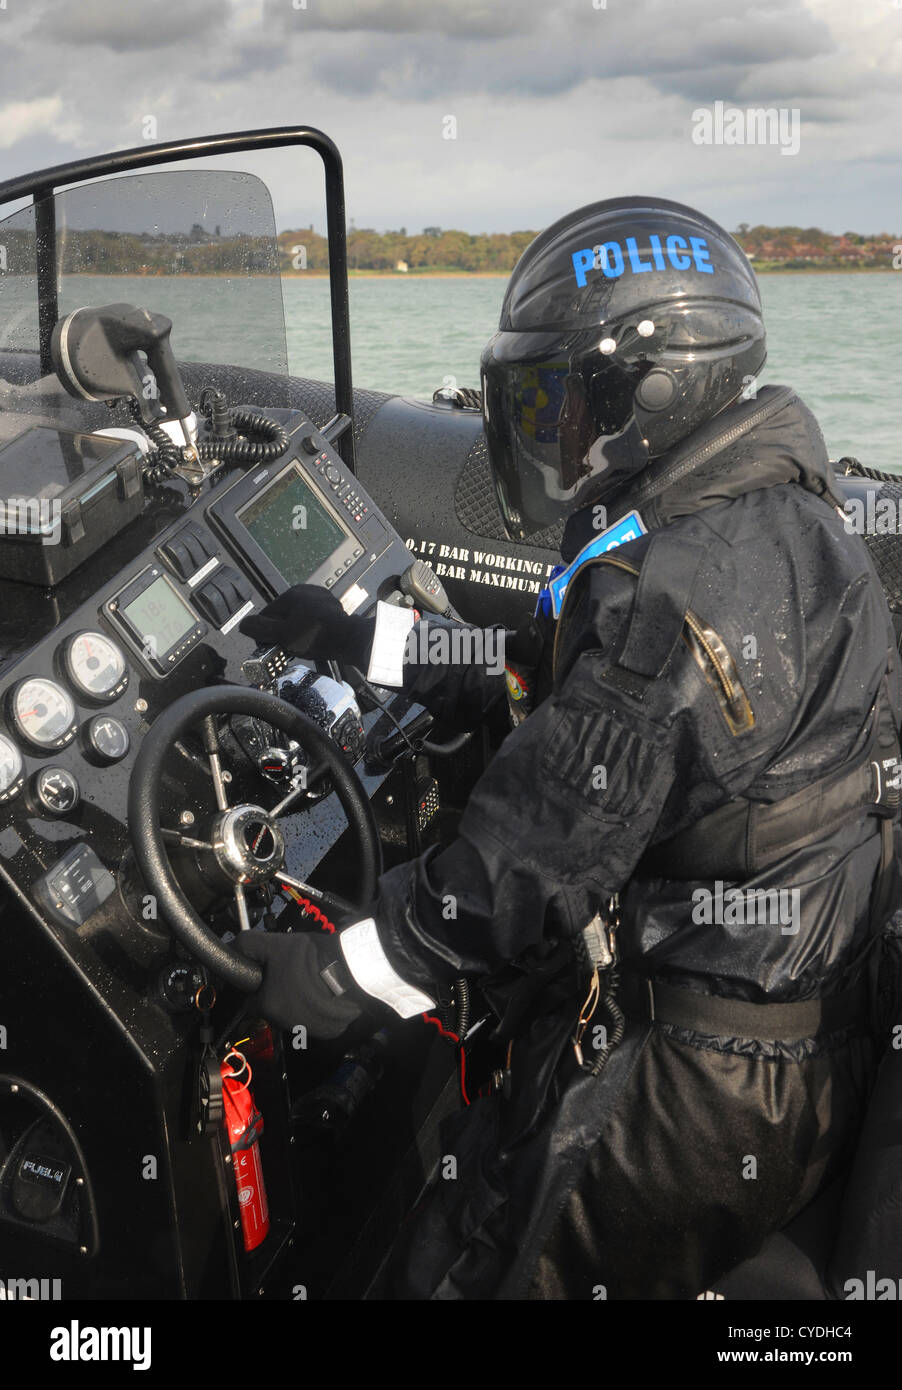 Marina di polizia officer presso i controlli di alta velocità nervatura su un giorno inverni. Solent. In Inghilterra. Ottobre 2012. Foto Stock